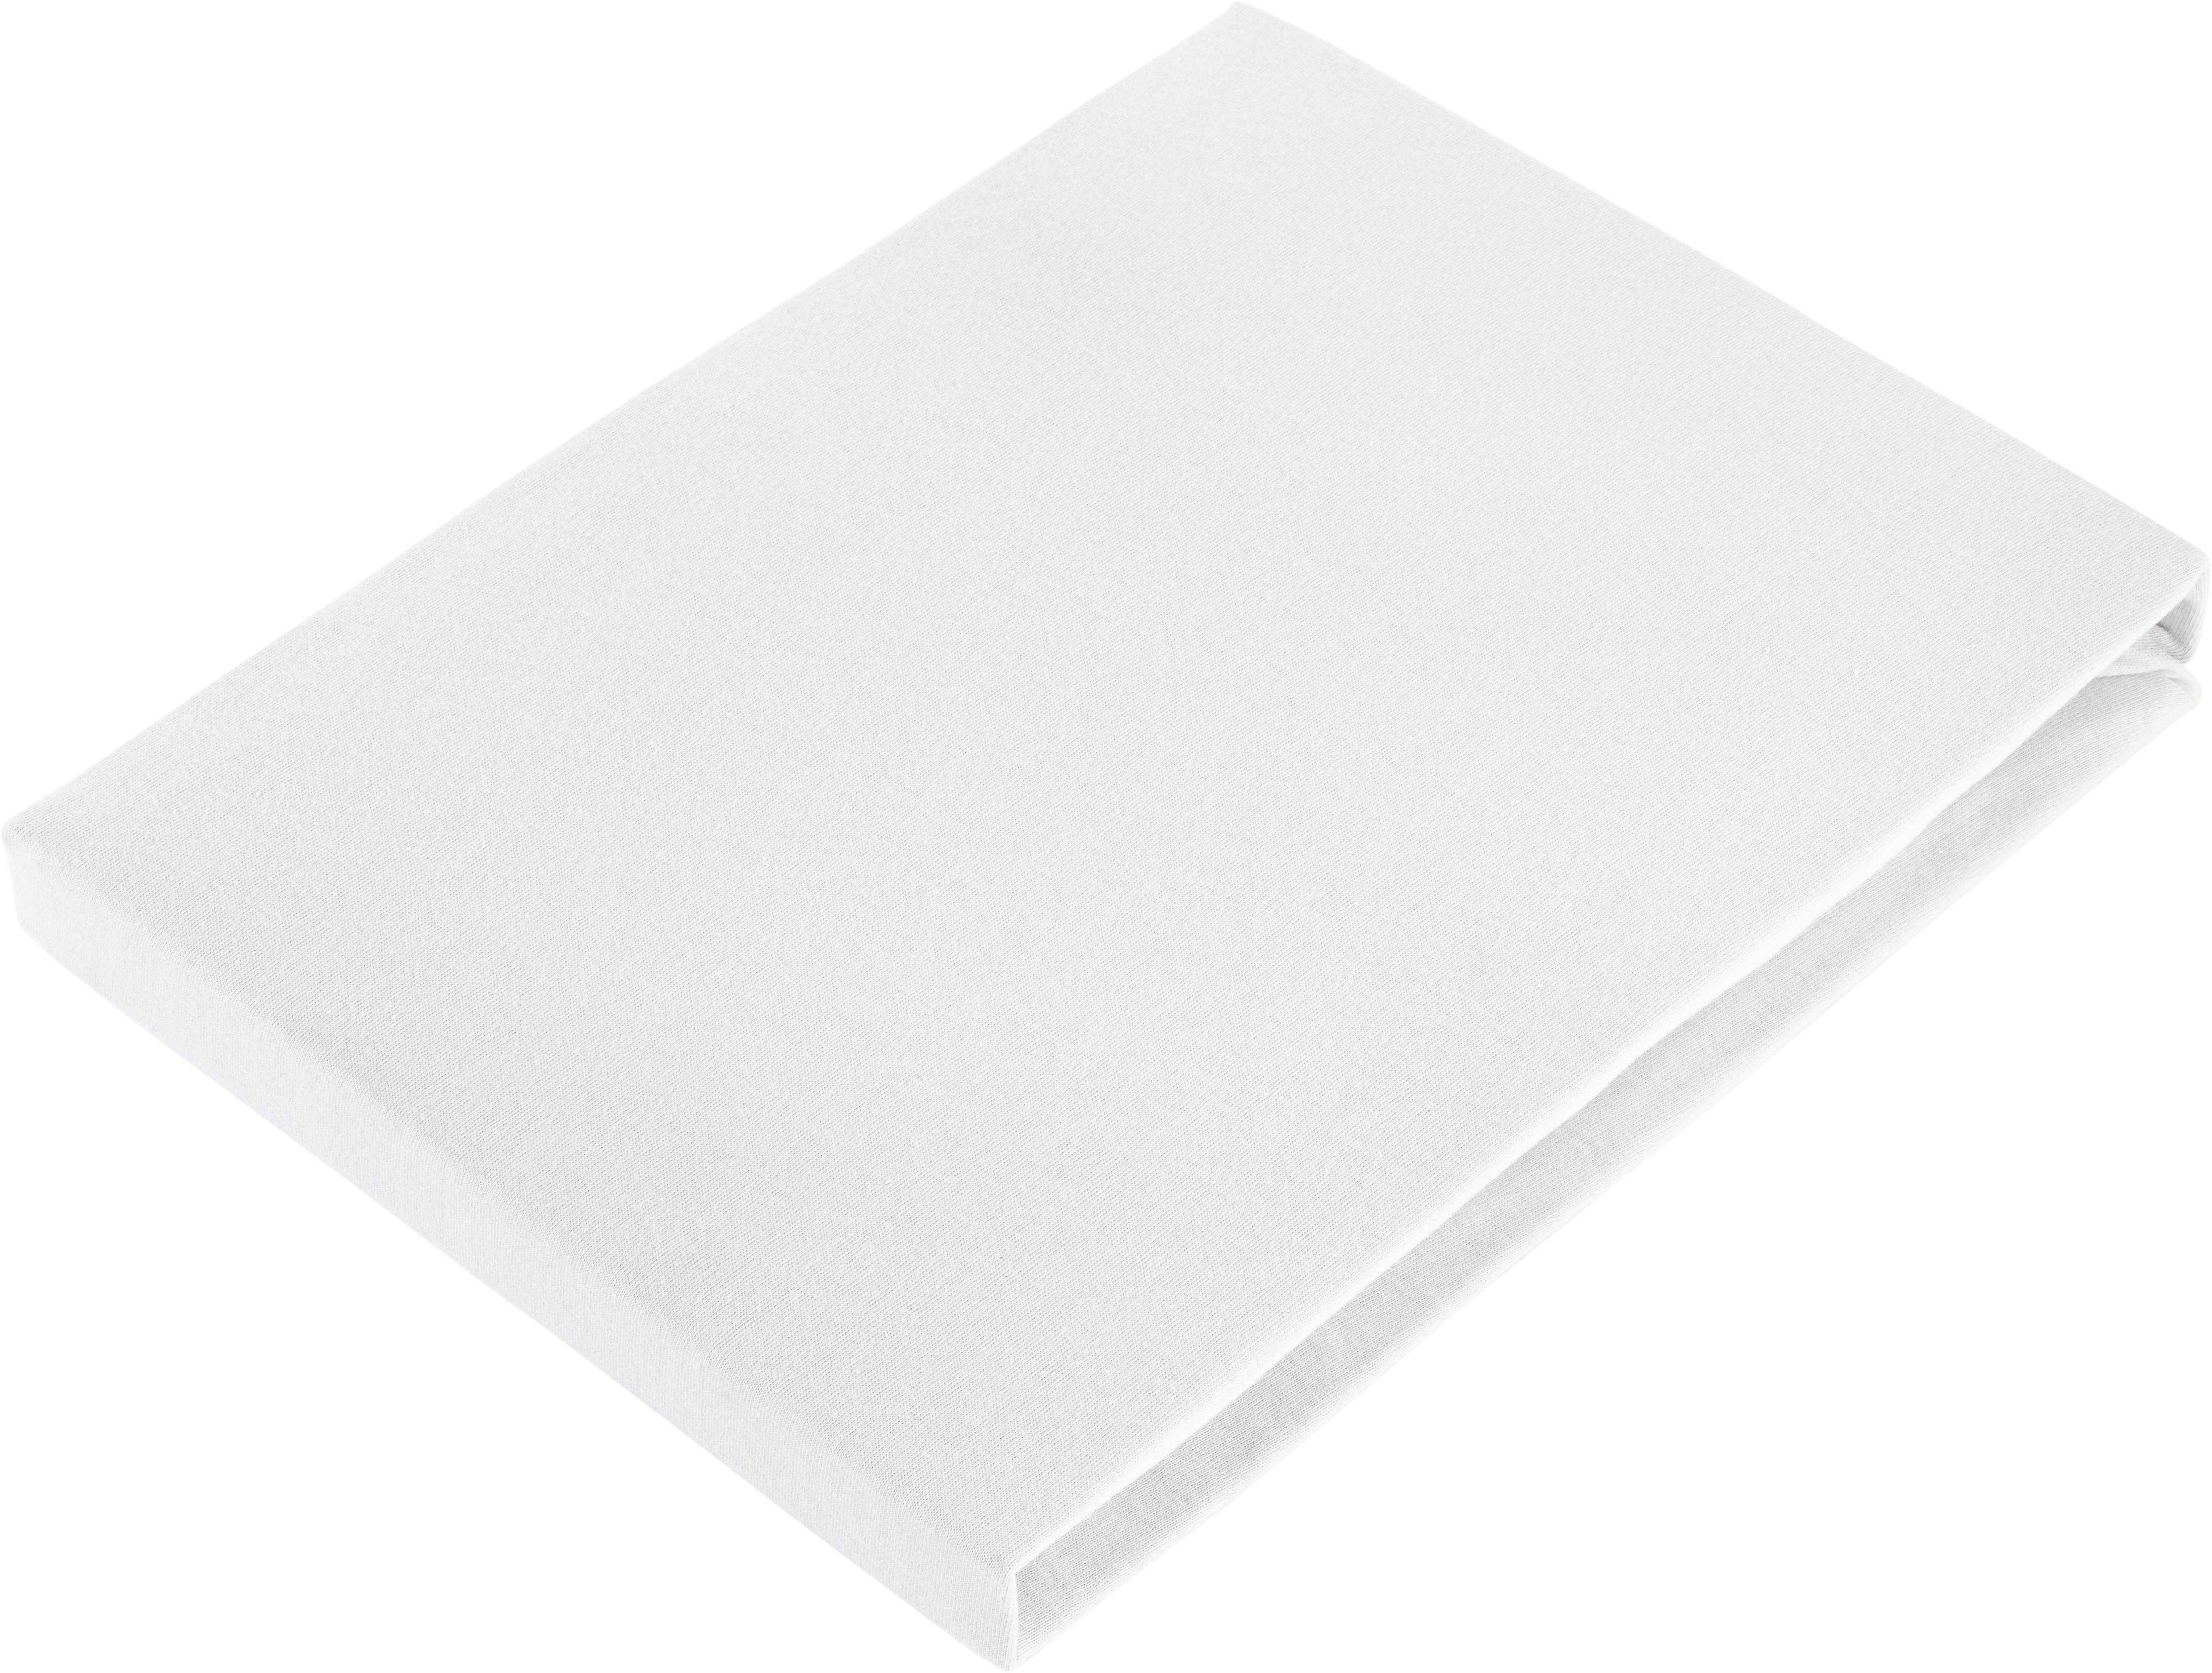 Elastické Prostěradlo Basic, 100/200 Cm - barvy stříbra, textil (100/200cm) - Modern Living